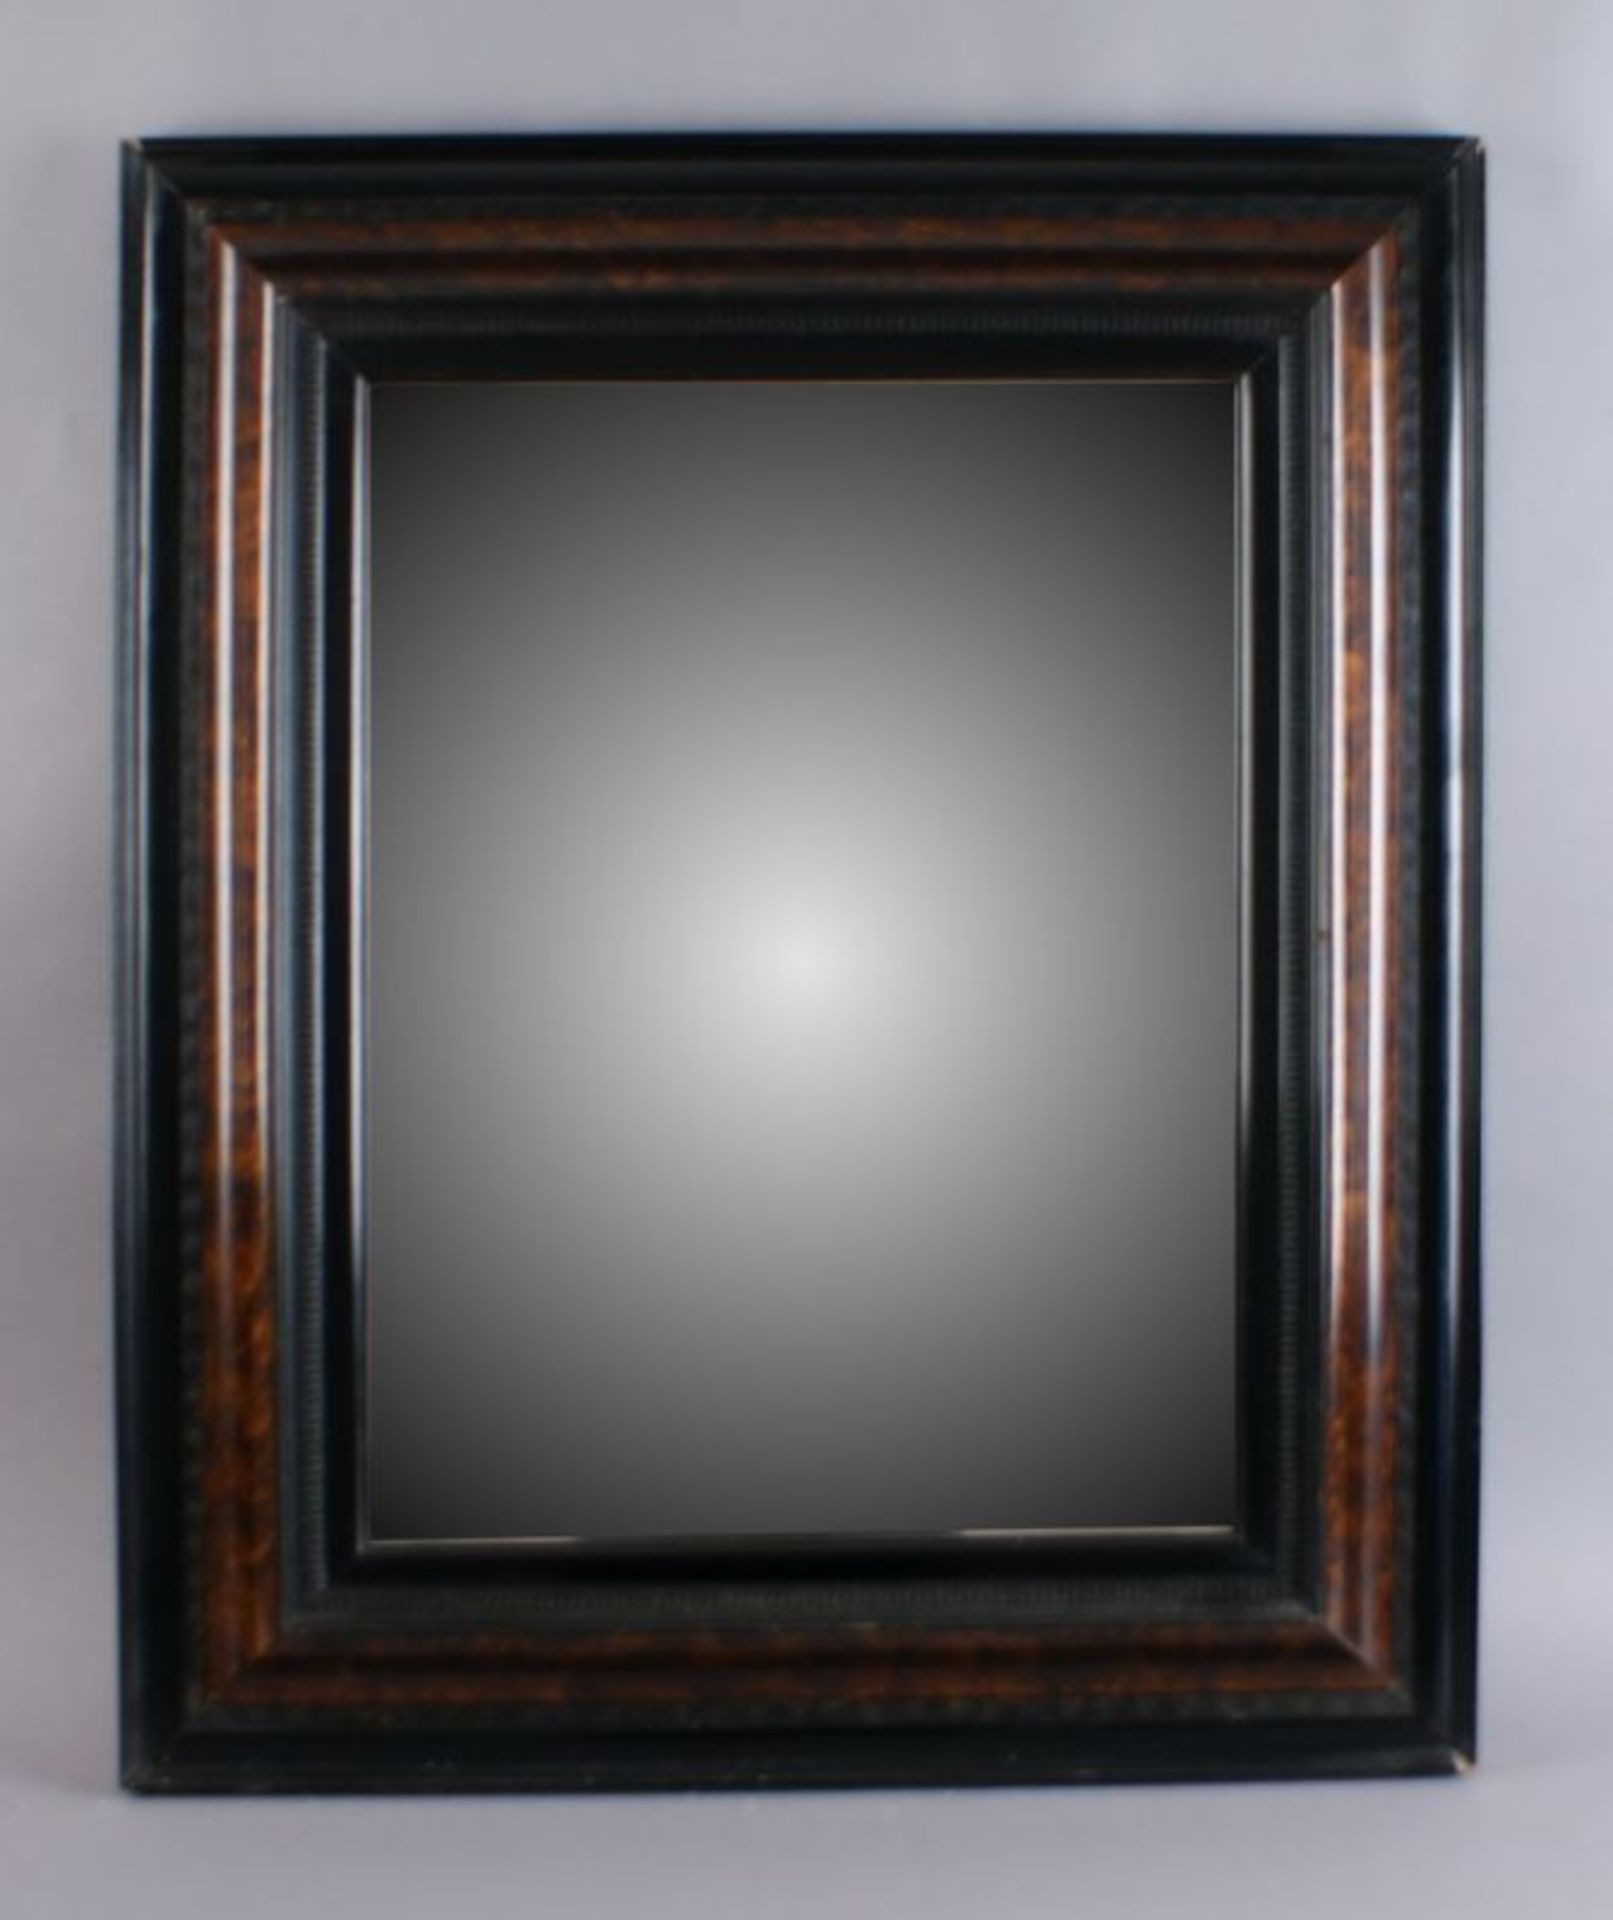 SPIEGELRAHMEN Holz geschnitzt, mit Spiegelglas, 85 x 70 cm 20.17 % buyer's premium on the hammer - Bild 2 aus 6